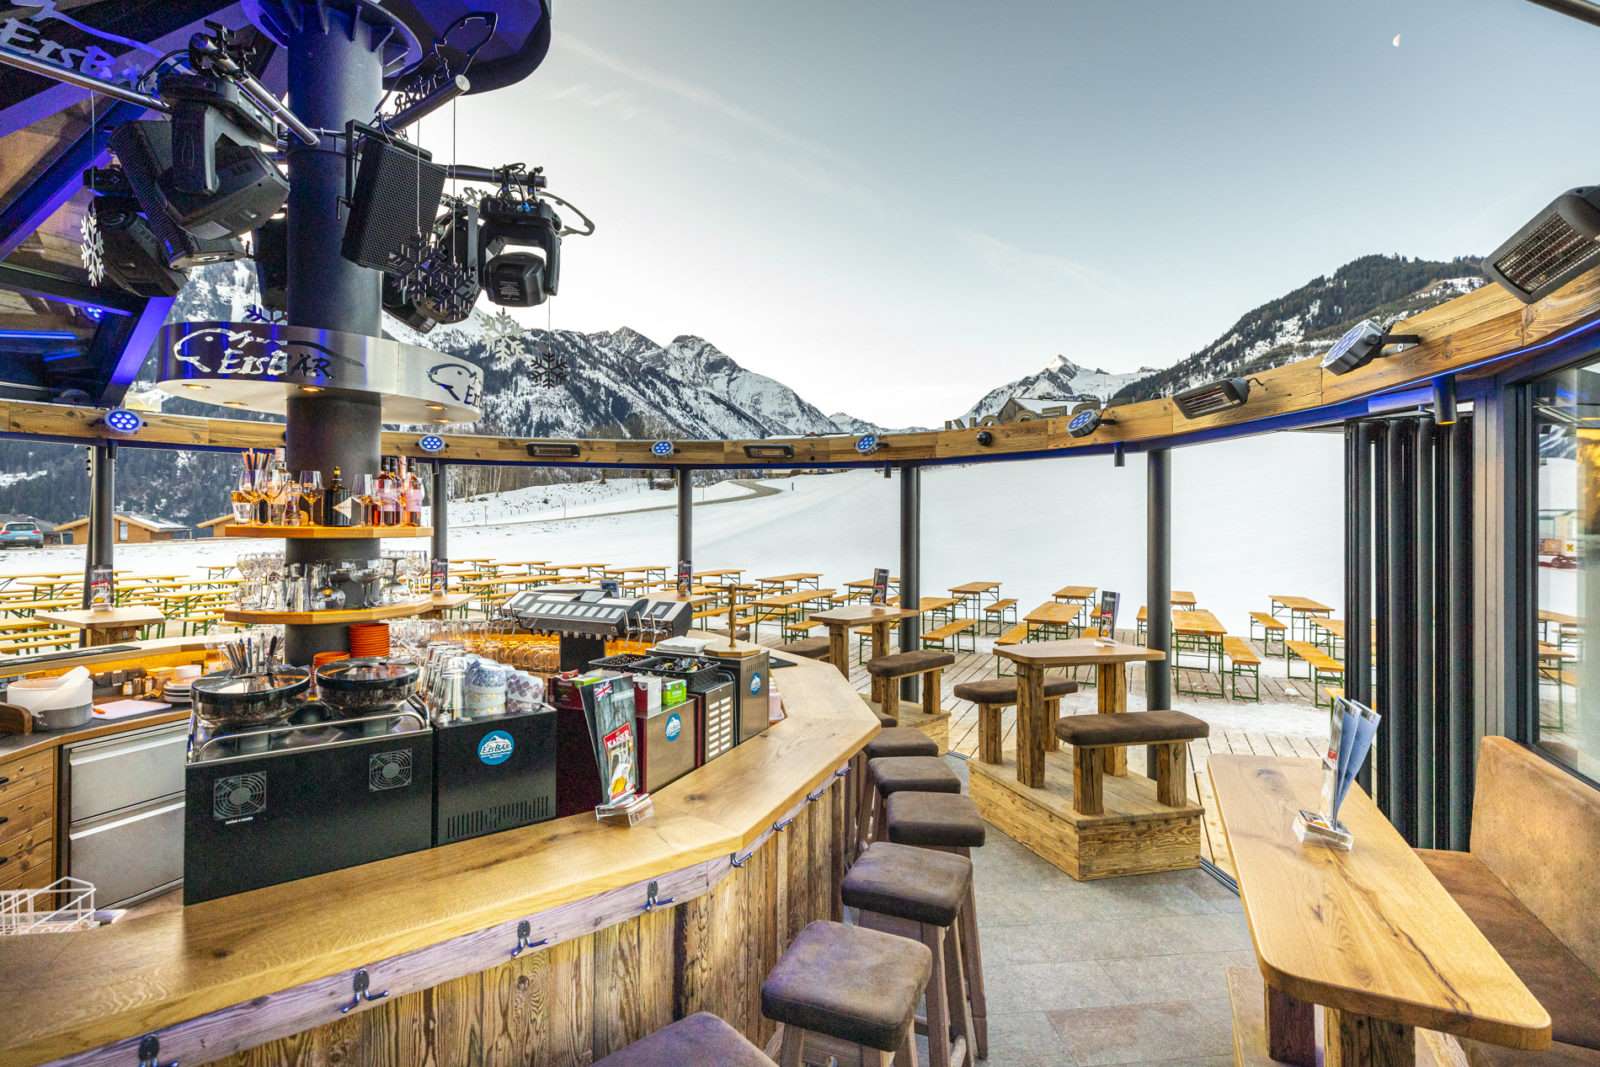 Open Air Apres Ski - Eisbär Bar Kaprun